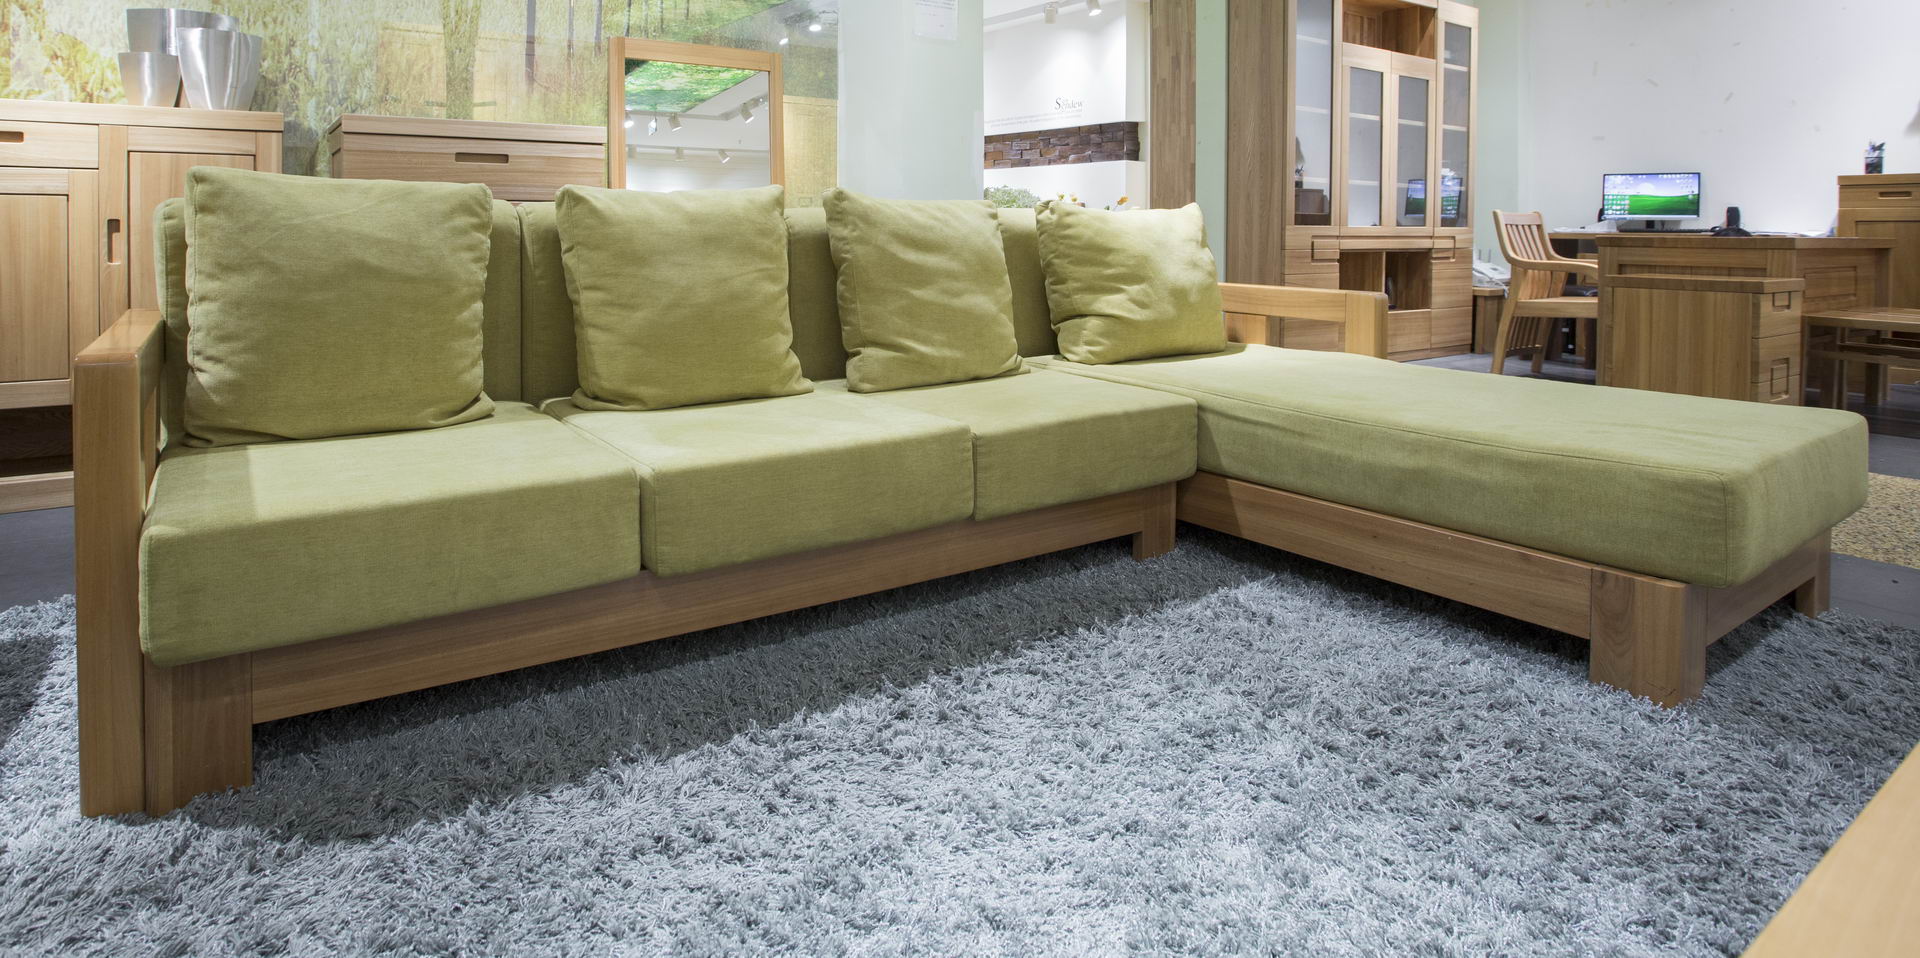 厚实的实木沙发脚，稳重牢固的霸占地面，沙发的座包厚实柔软，合理有效的释放疲劳，提高舒适感。